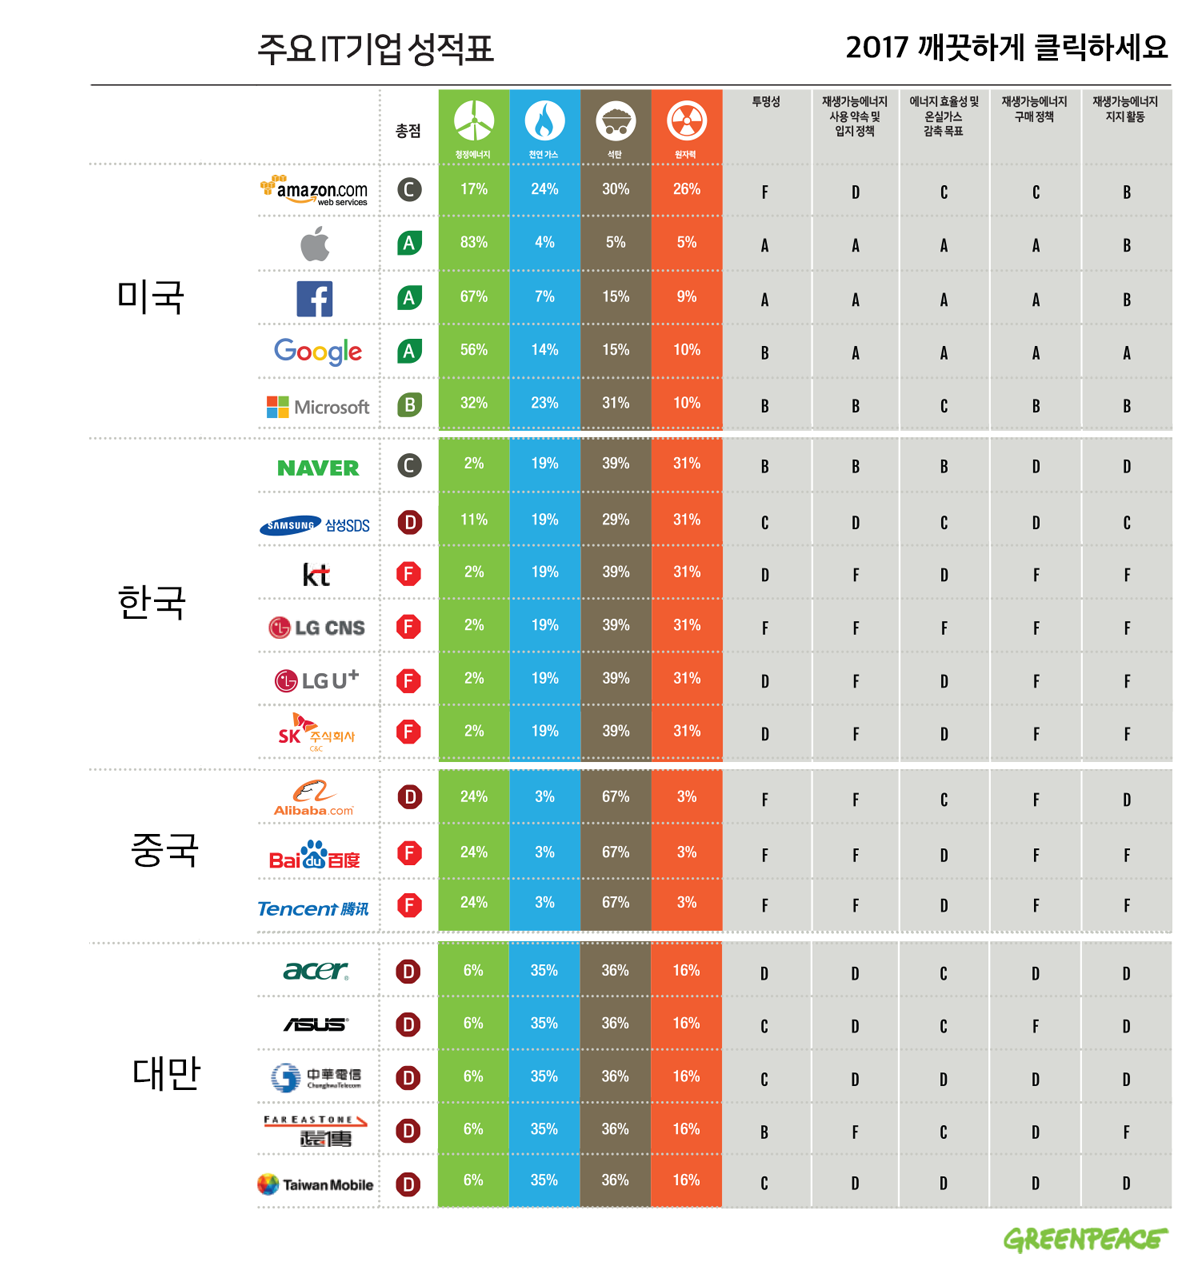 2017 깨끗하게 클릭하세요(Clicking Clean) 글로벌 보고서 중 주요 IT기업들의 성적표